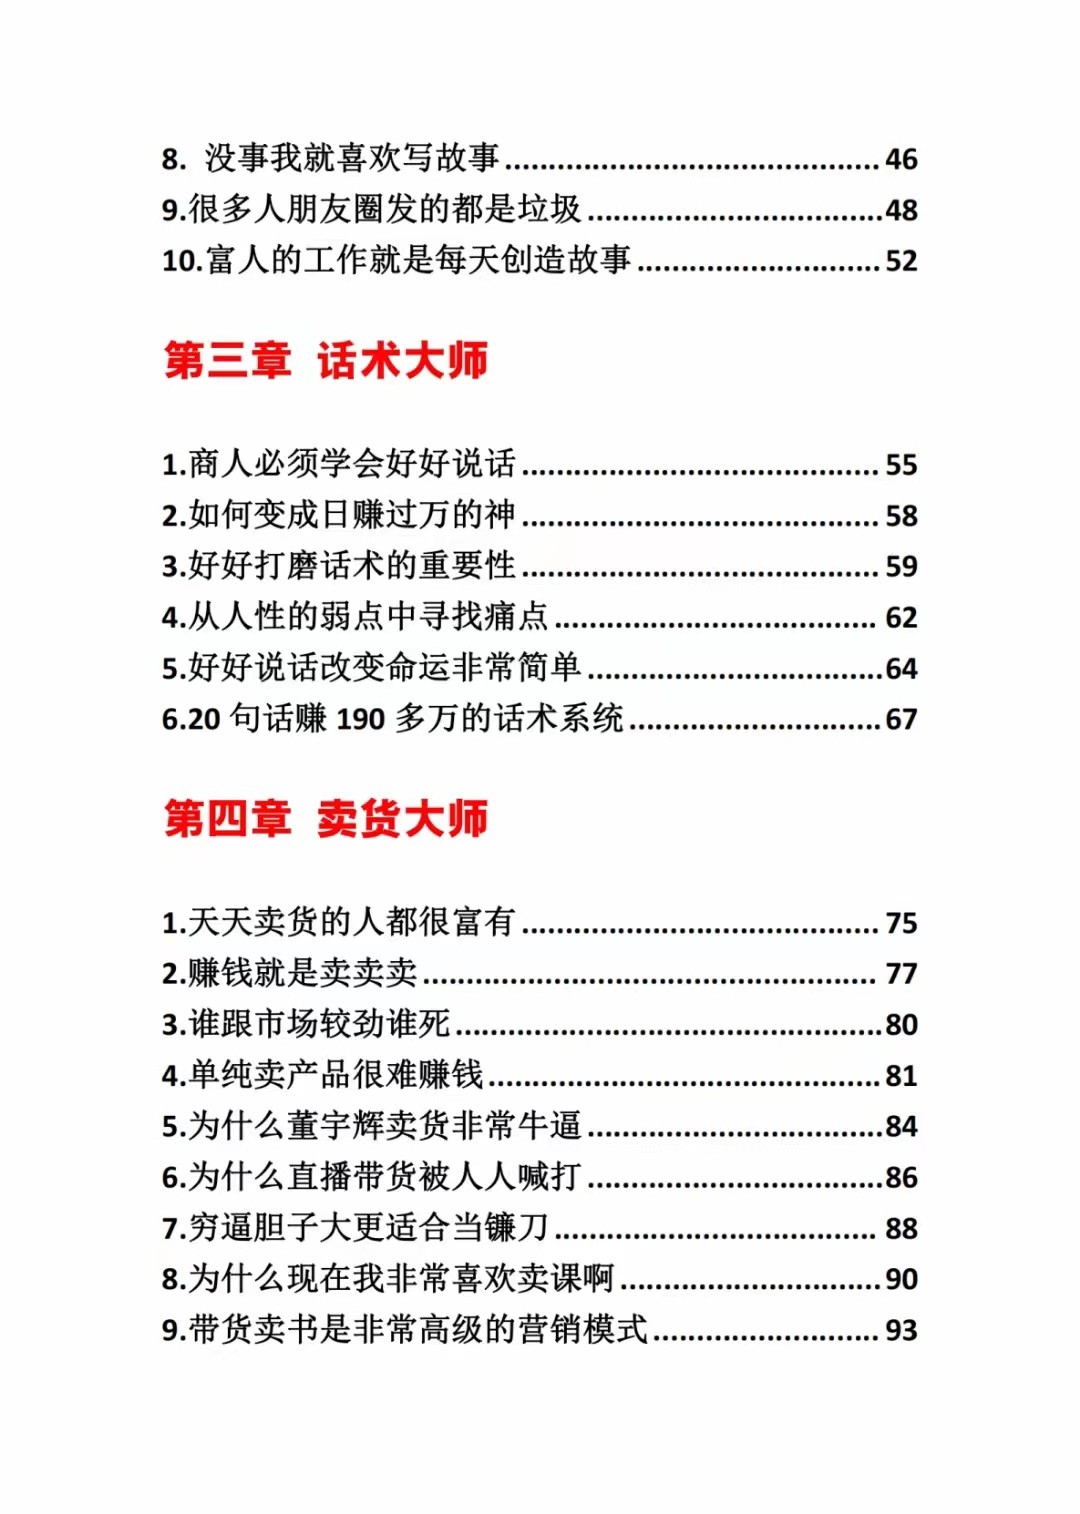 《营销大师如何割韭菜》禁止外传的大师绝学电子书2458 作者:福缘创业网 帖子ID:106493